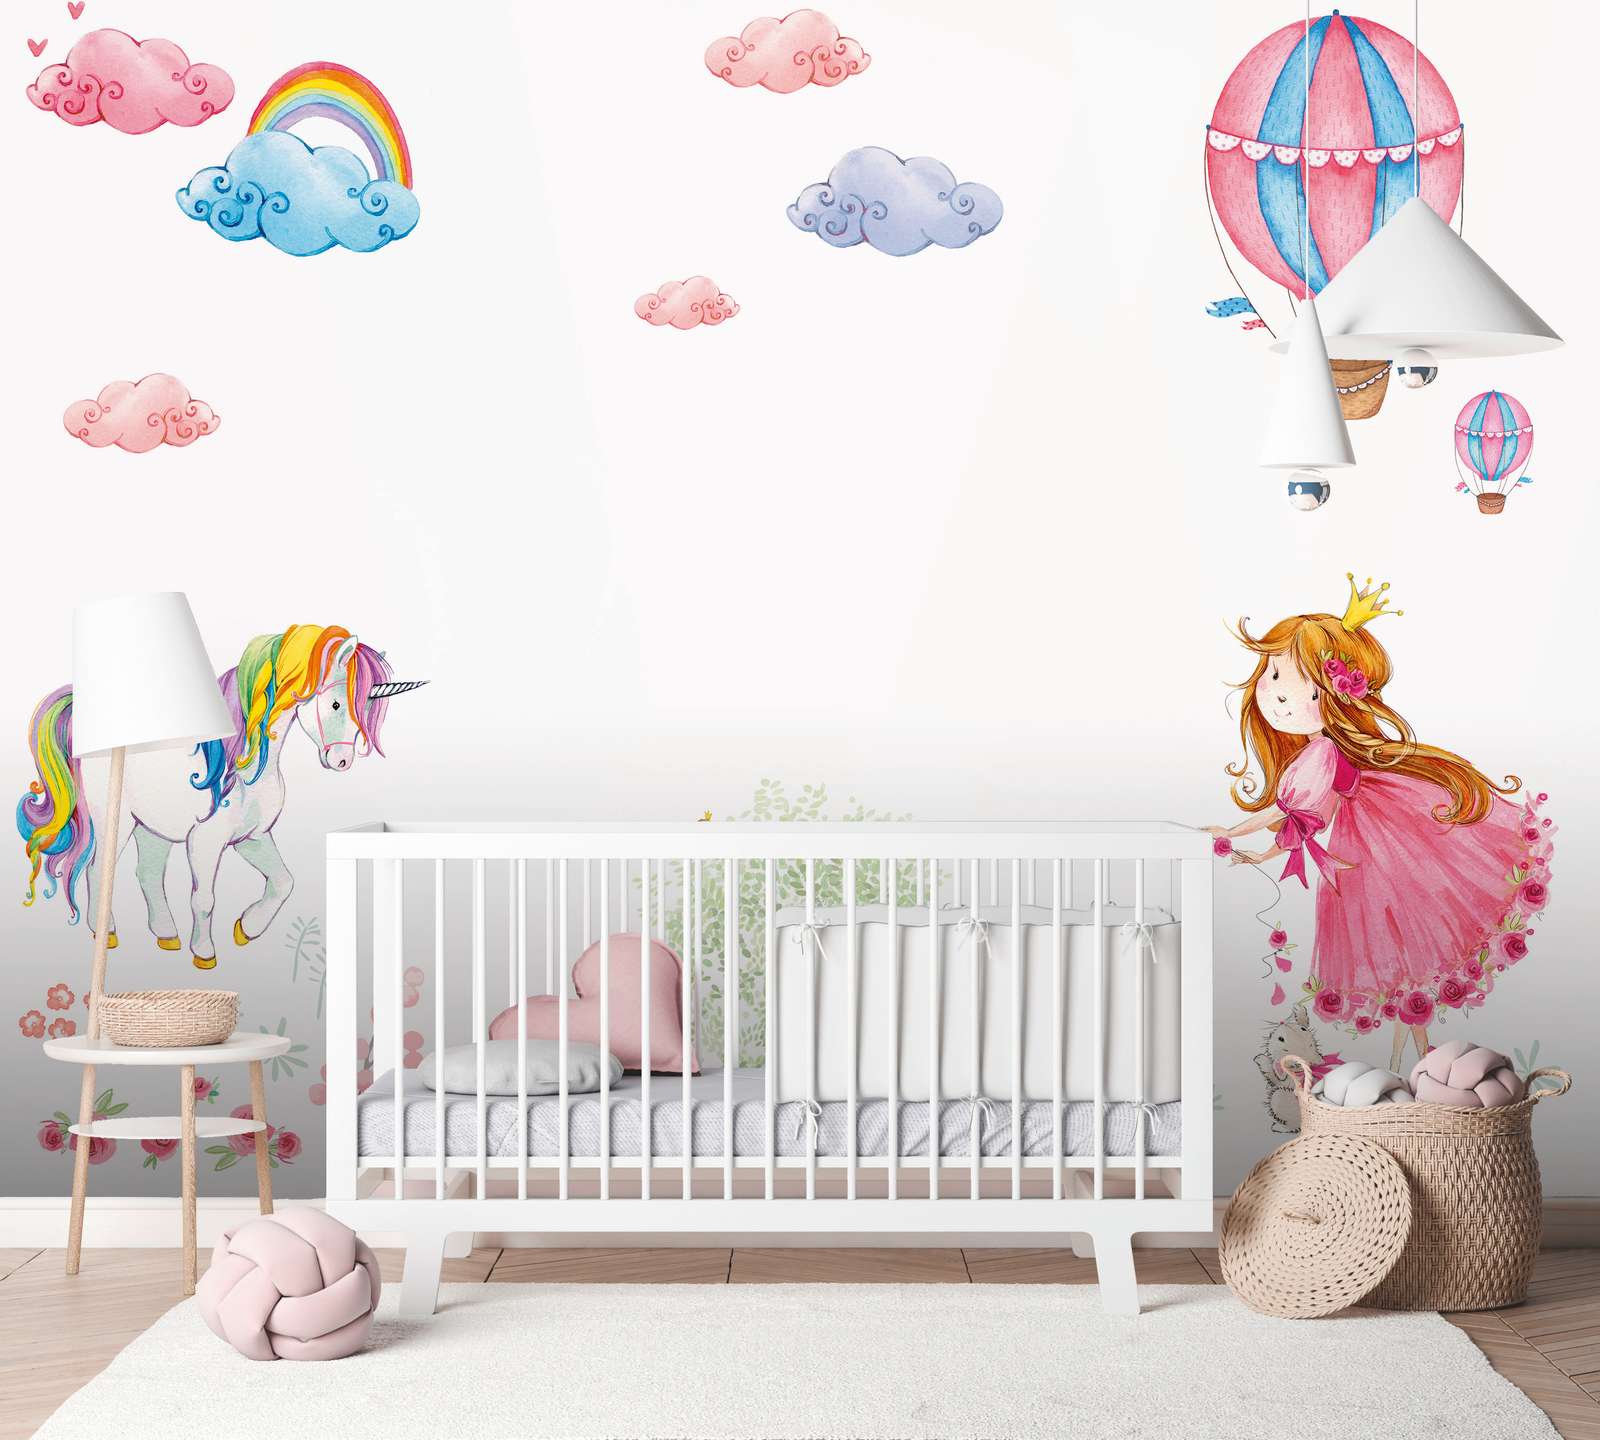             Fototapete Kinderzimmer mit Prinzessin und Einhorn – Pink, Bunt, Weiß
        